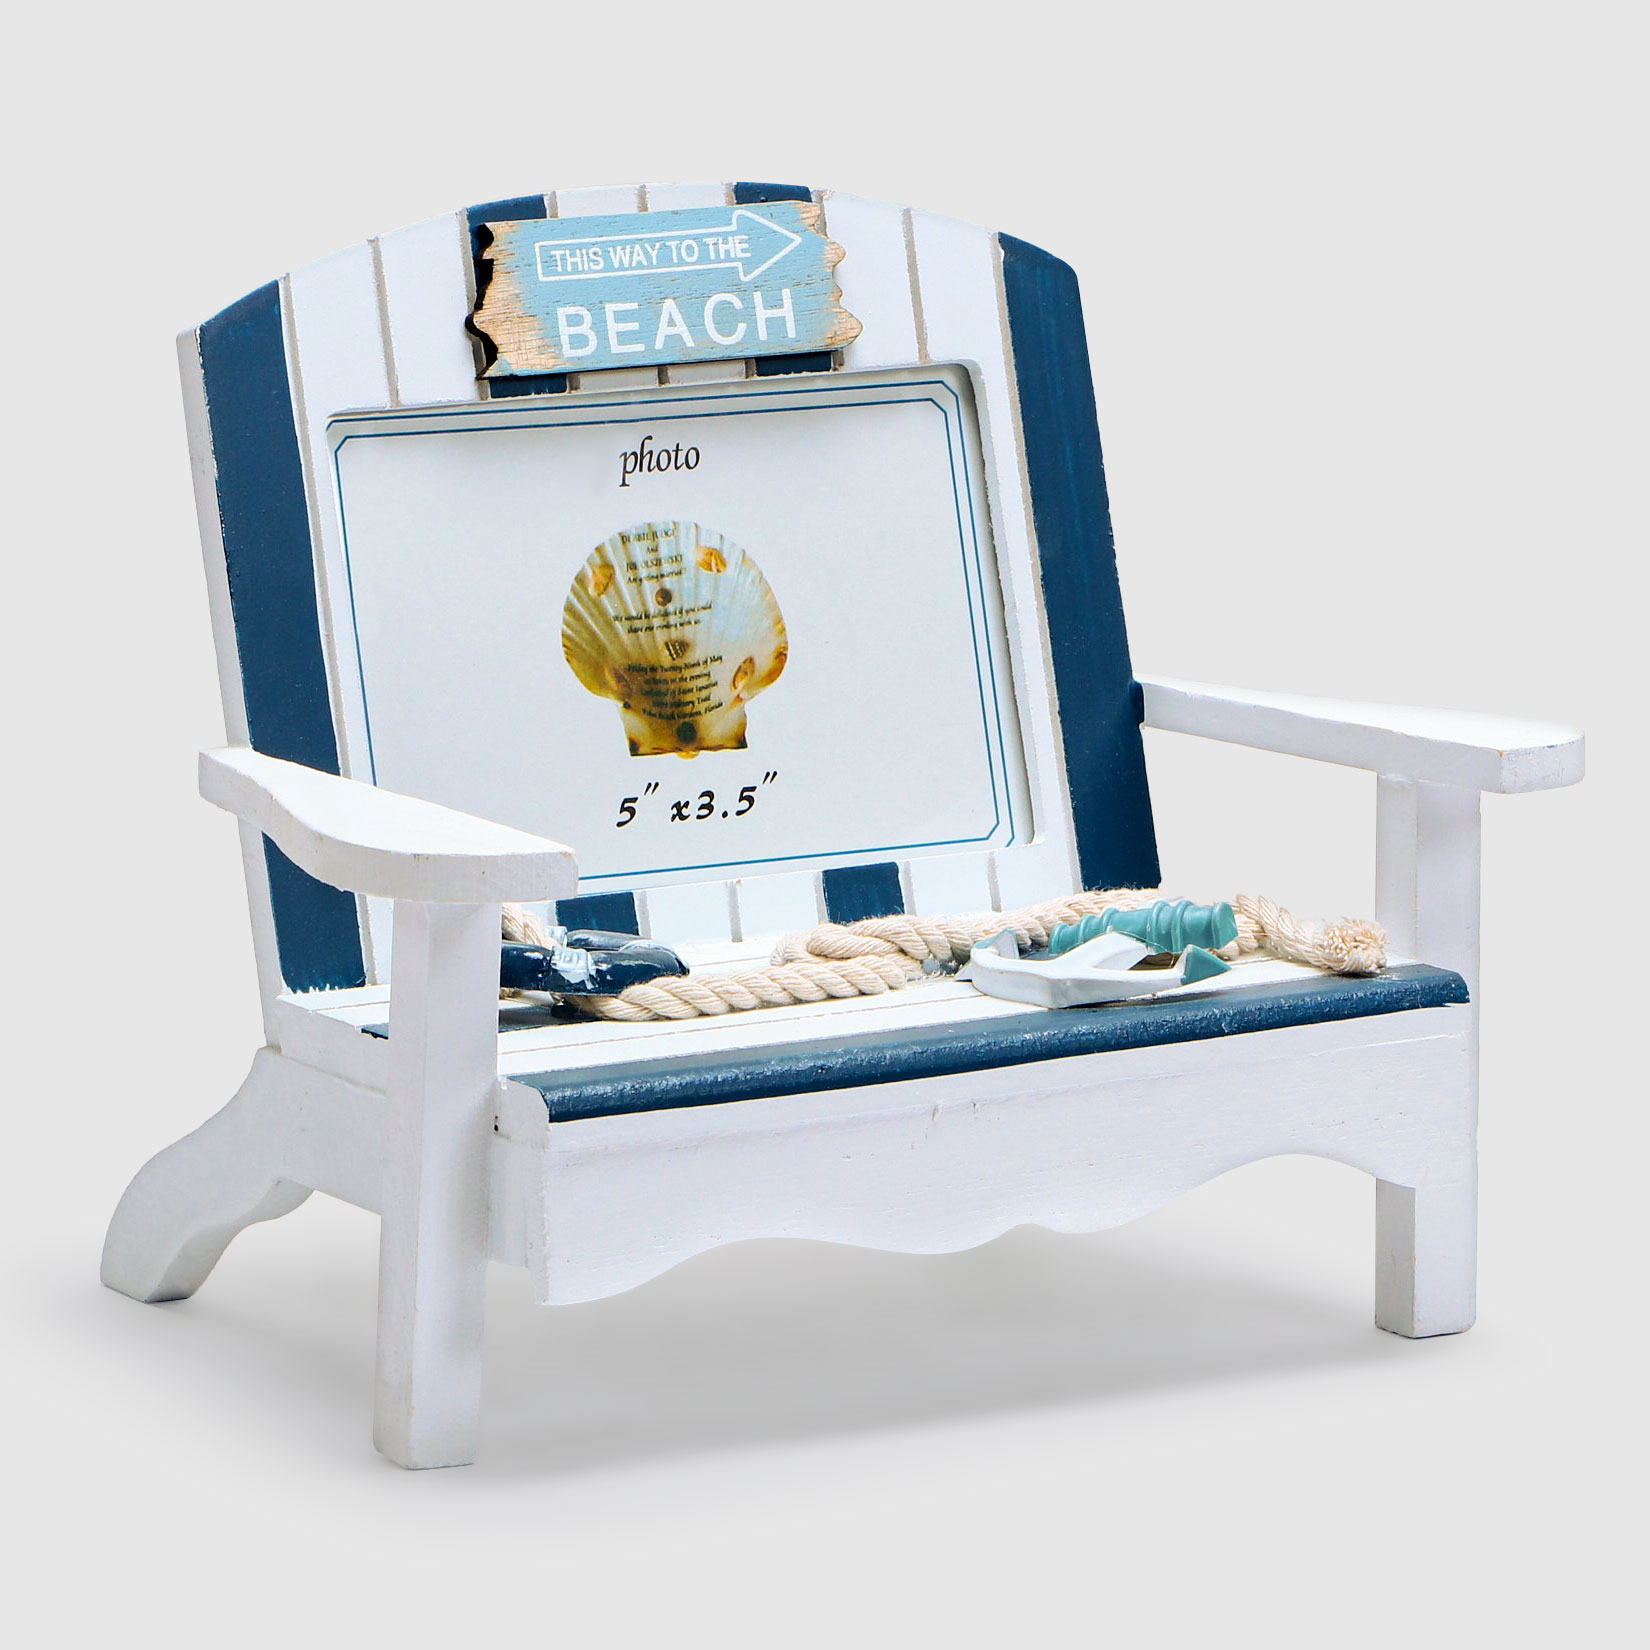 Фоторамка Liansheng пляжный стул, бело-голубой, 23x13.5x18.5 см